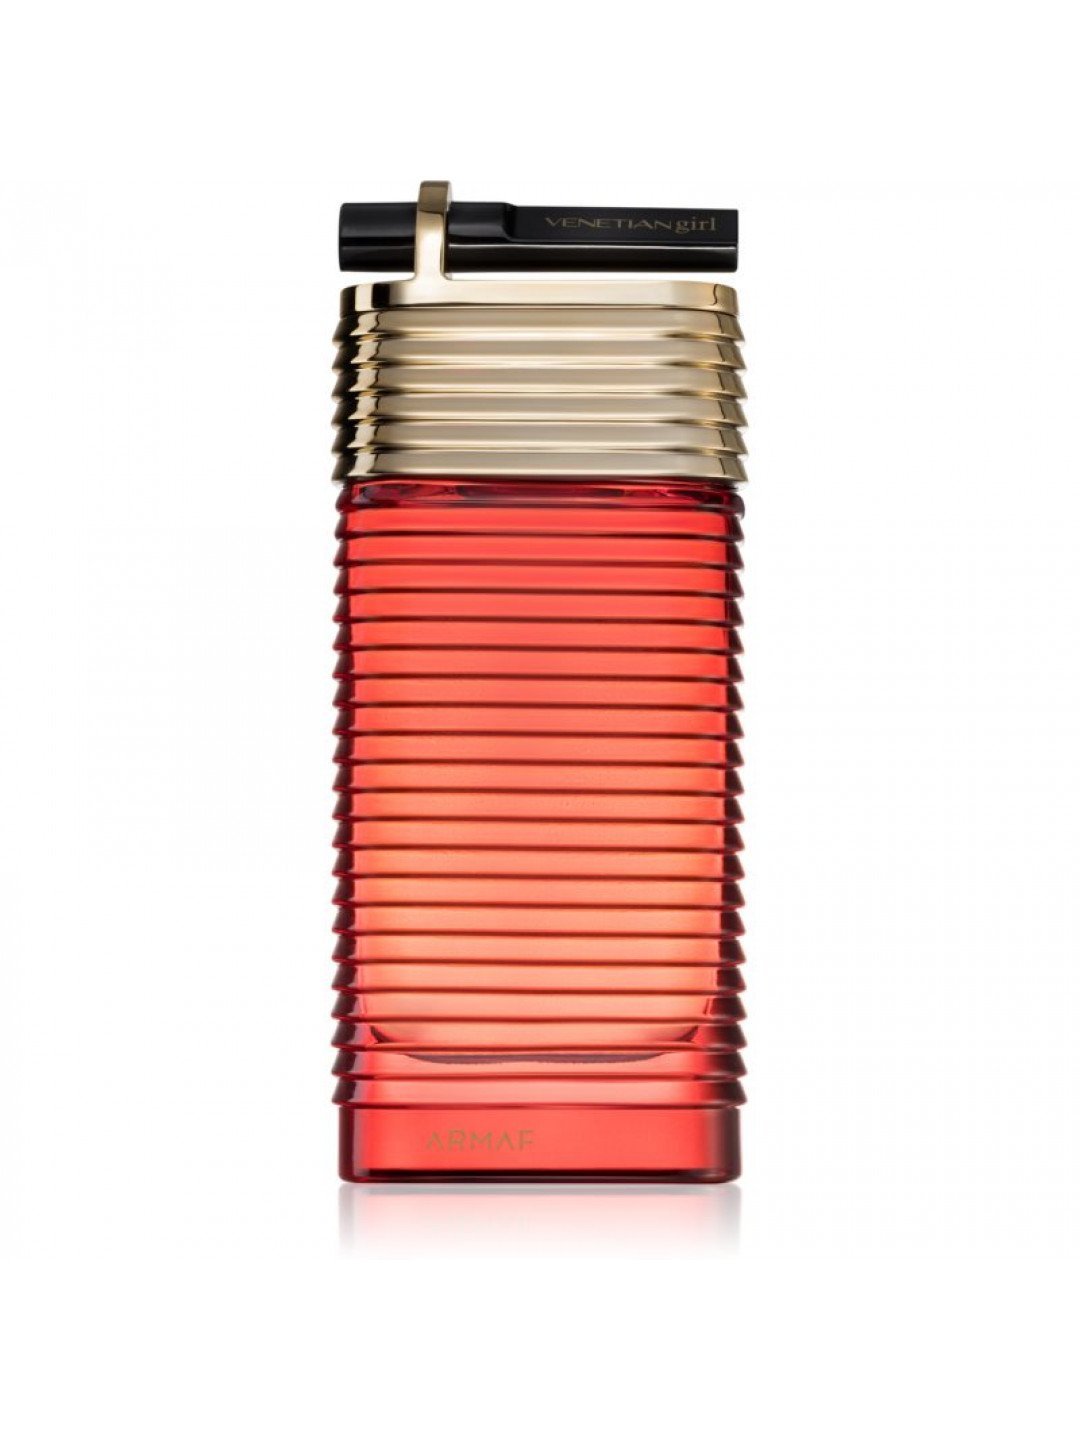 Armaf Venetian Girl Edition Rogue parfémovaná voda pro ženy 100 ml